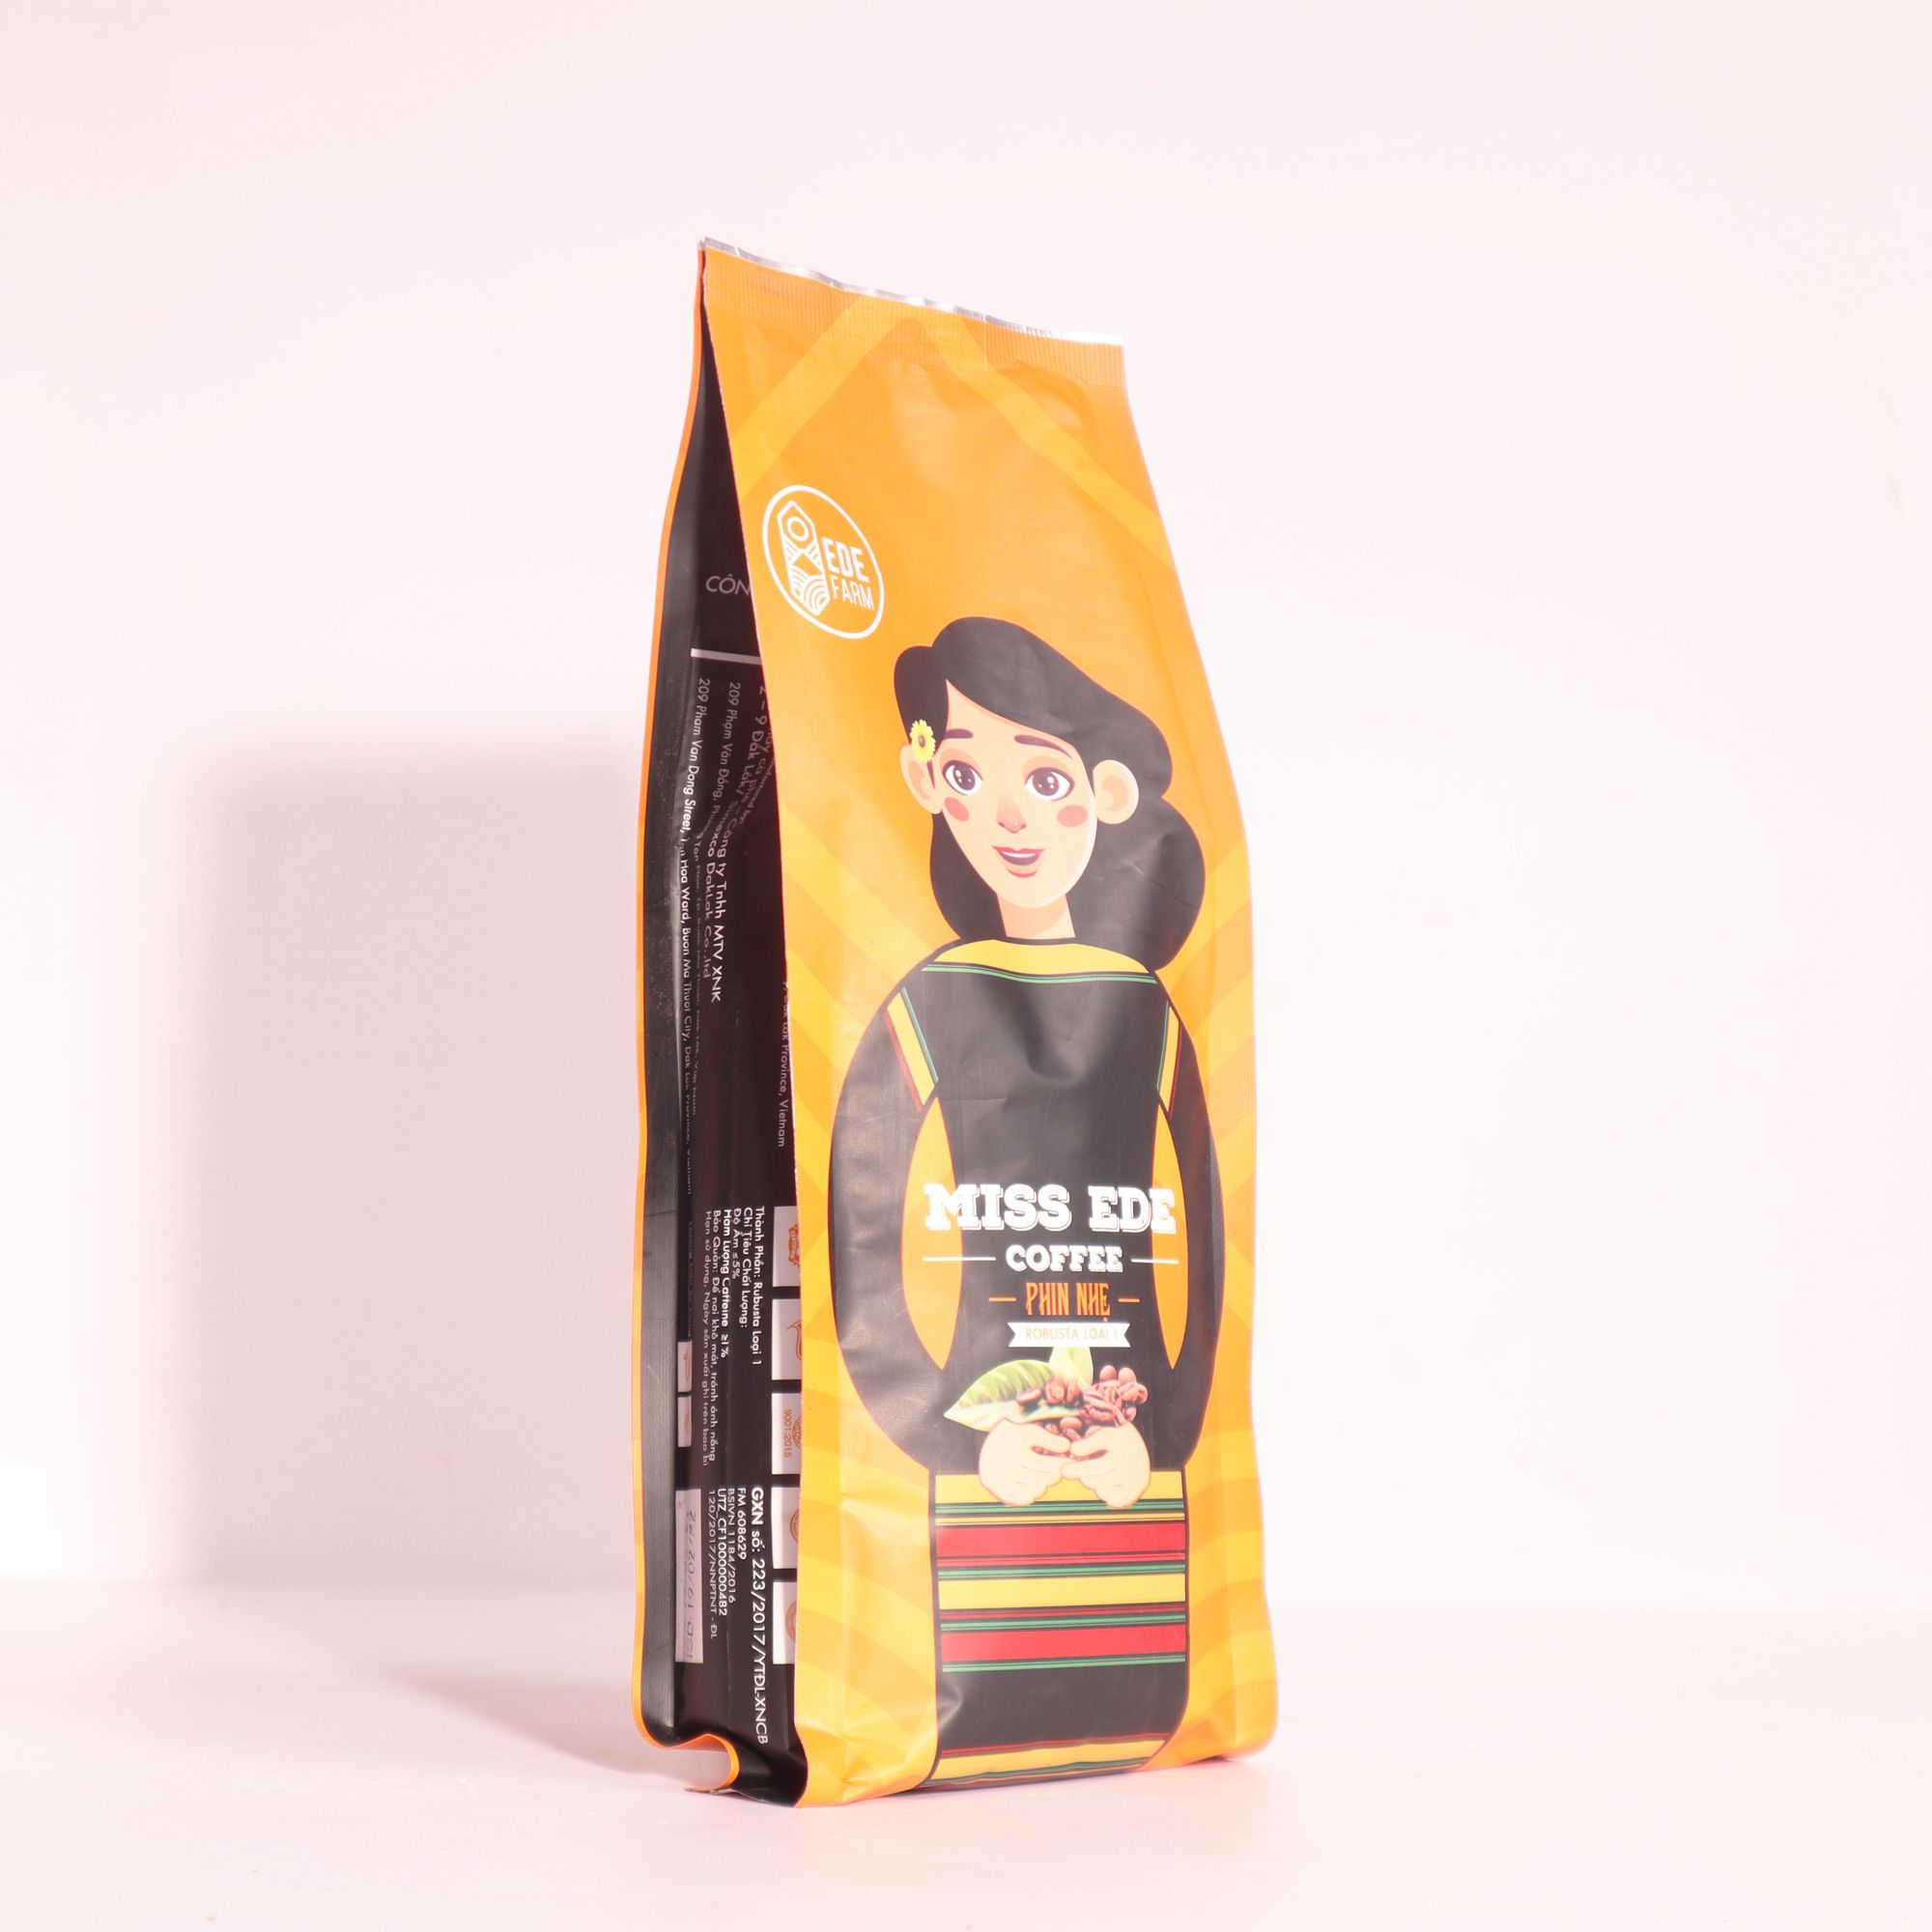  Cà phê nguyên chất PHIN NHẸ - Honey Robusta Loại 1 (250g) 